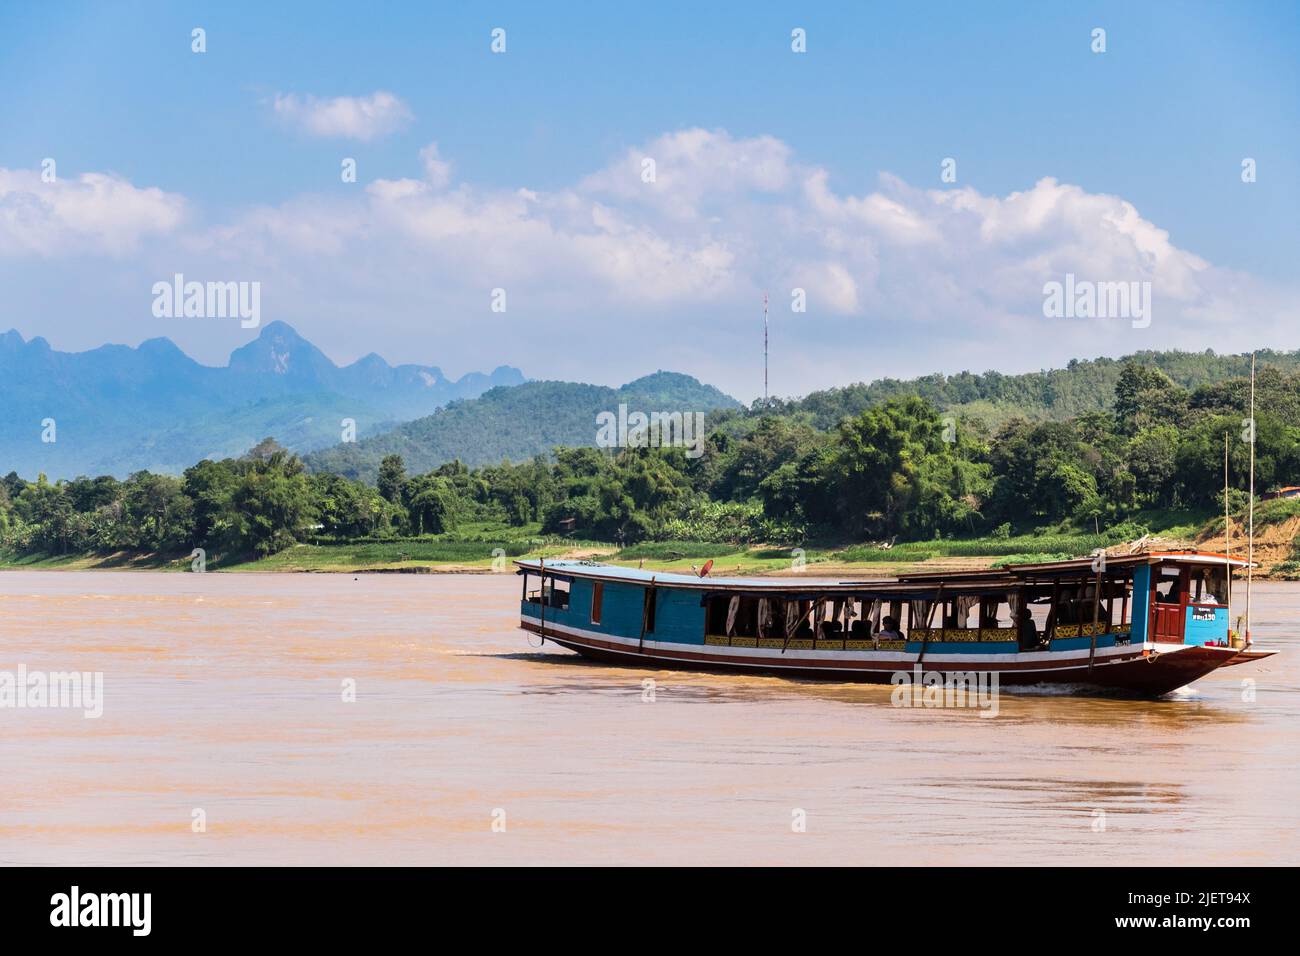 Tradicional barco turístico navegando por el río Mekong. Luang Prabang, Laos, sudeste de Asia Foto de stock